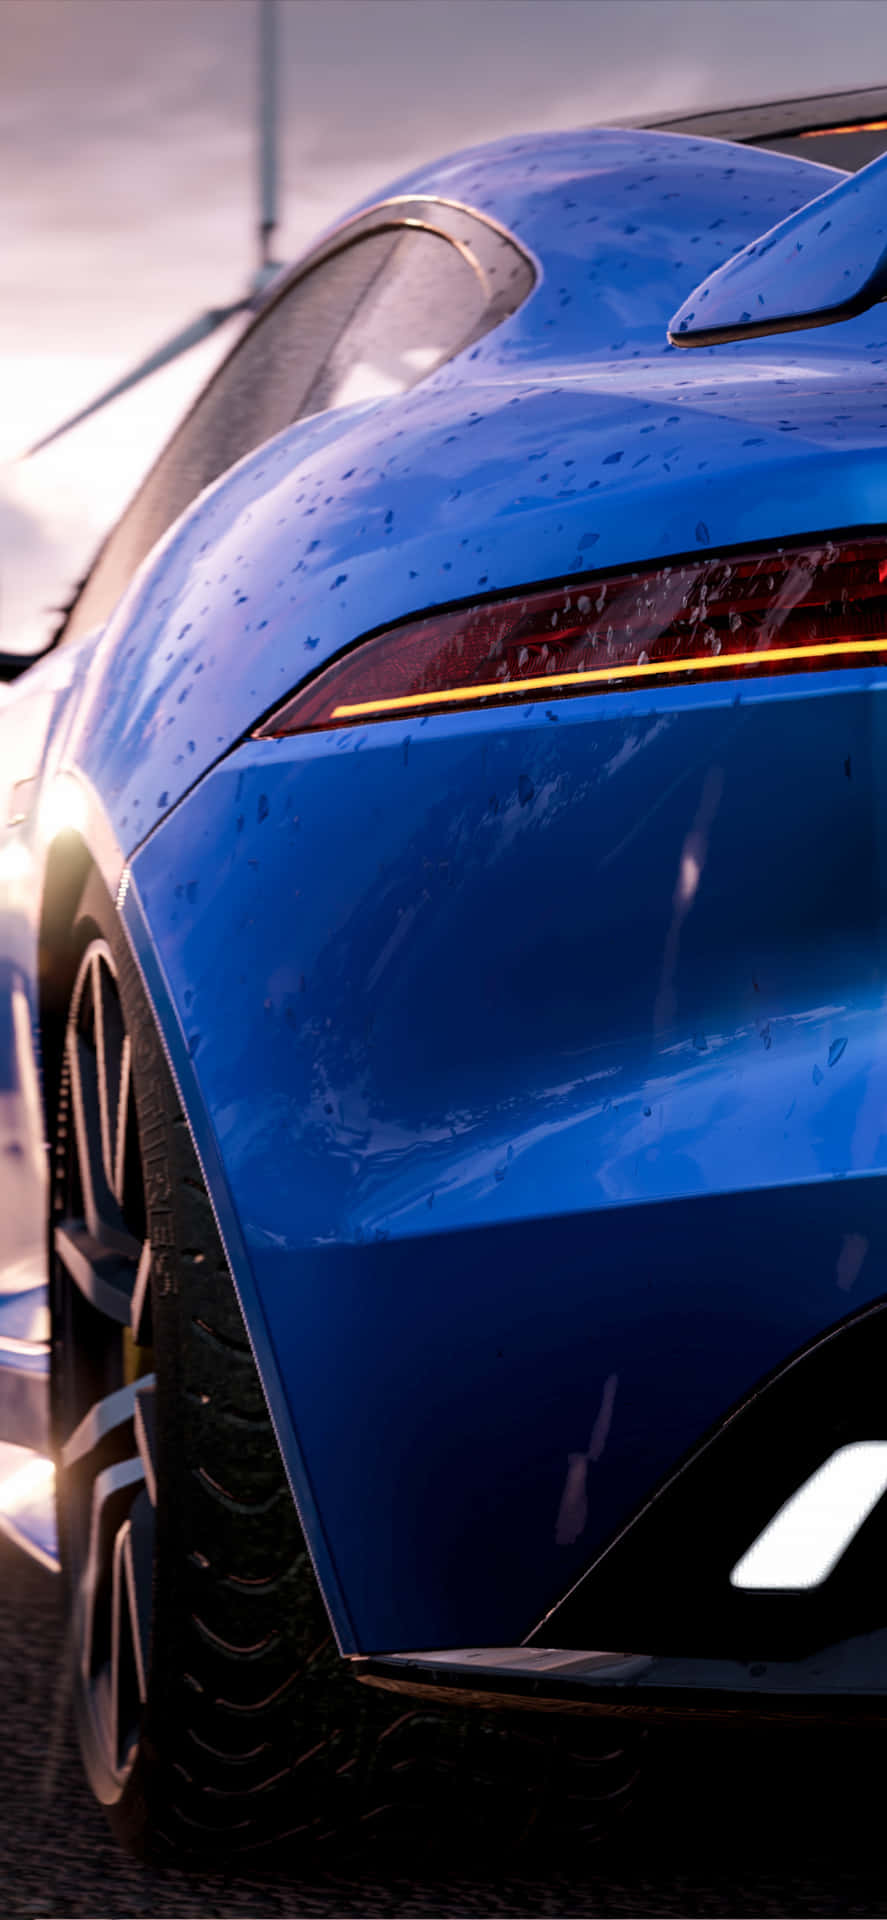 Fondode Pantalla De Un Jaguar F-type Azul En Project Cars 2 Para Iphone Xs Max.